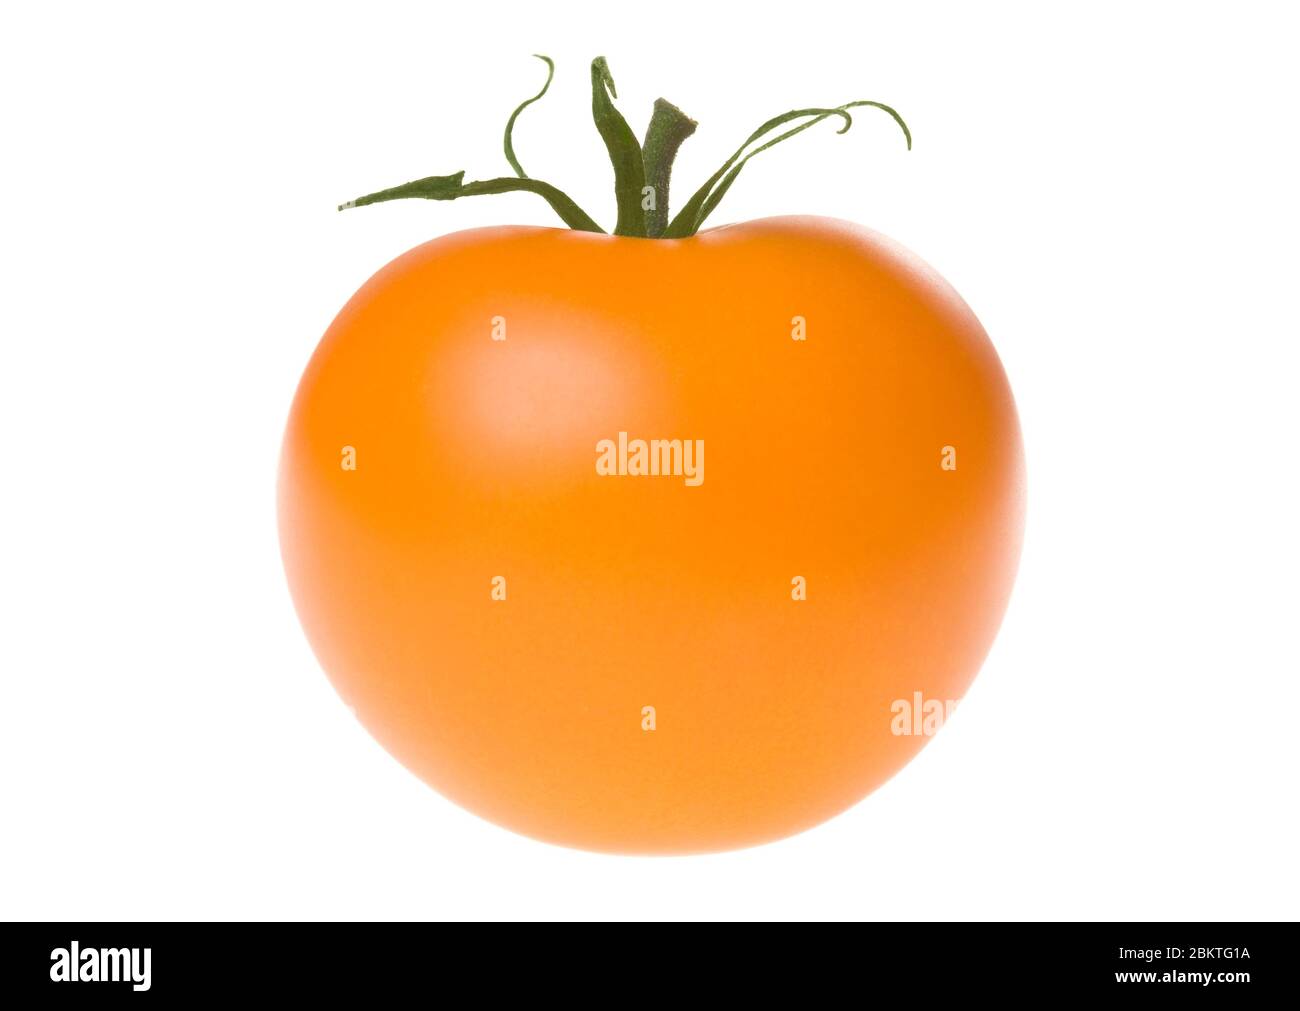 Tomate orange mûre fraîche avec tige verte, isolée sur fond blanc. Prise de vue en studio. Banque D'Images